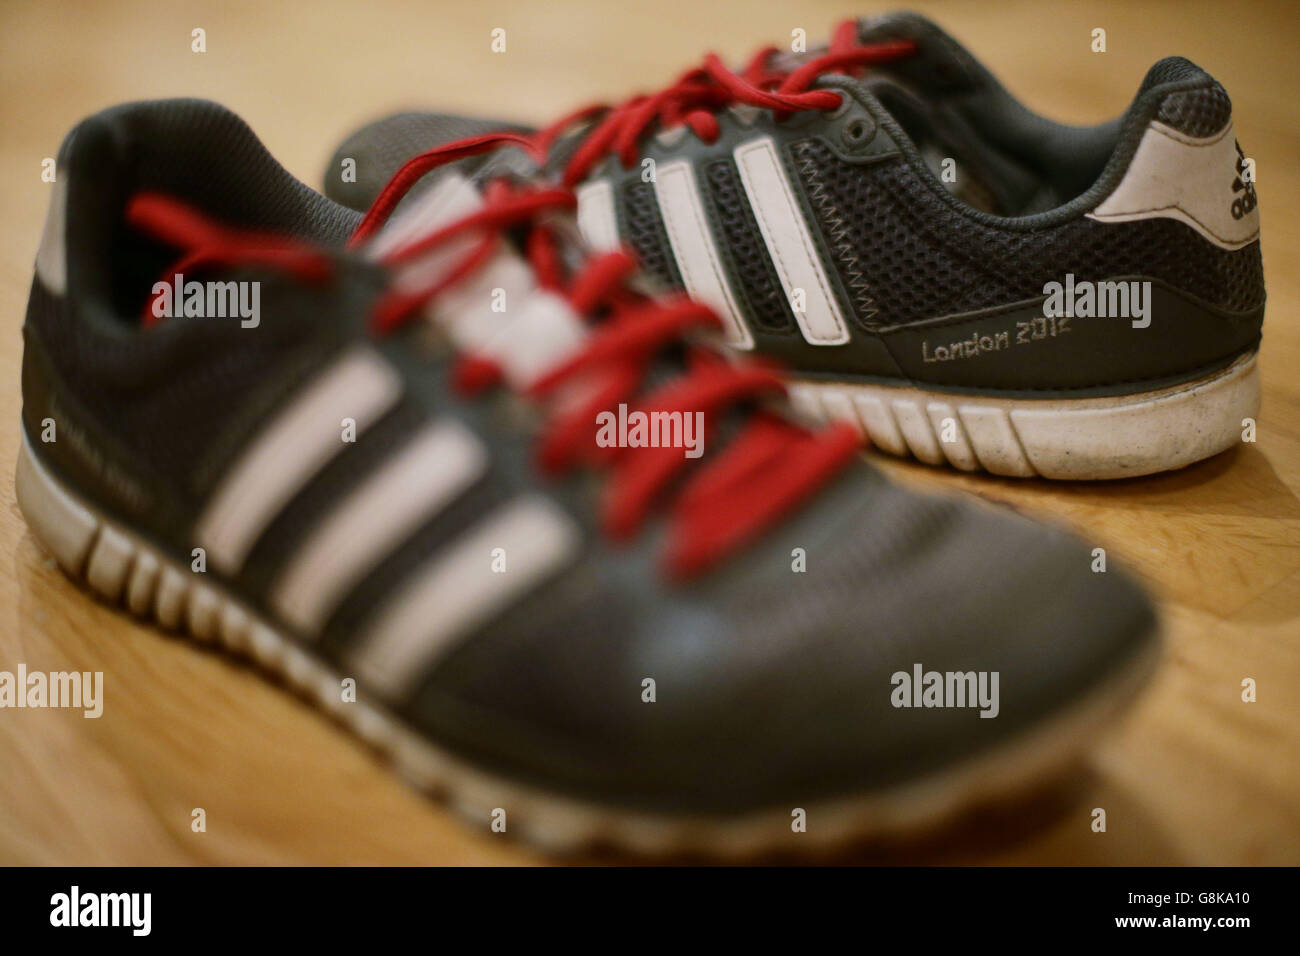 Une paire de chaussures de course à pied Adidas, de la marque London 2012, comme il a été rapporté que la société allemande de vêtements de sport a mis fin à son contrat de parrainage avec l'Association internationale des fédérations d'athlétisme (IAAF) quatre ans plus tôt. Banque D'Images